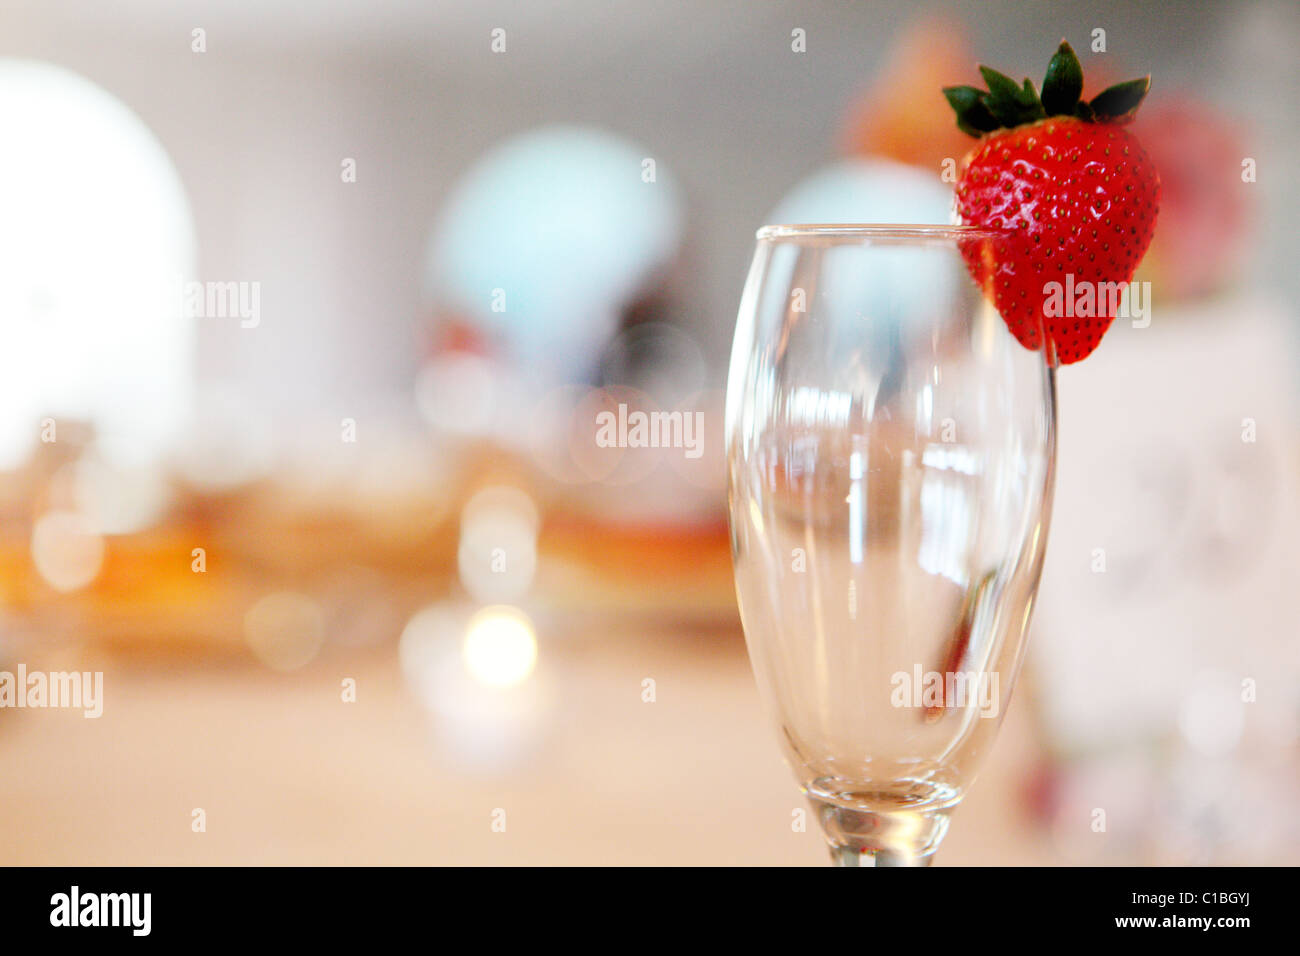 Copa de Champaña fresa decoración beber alcohol Foto de stock